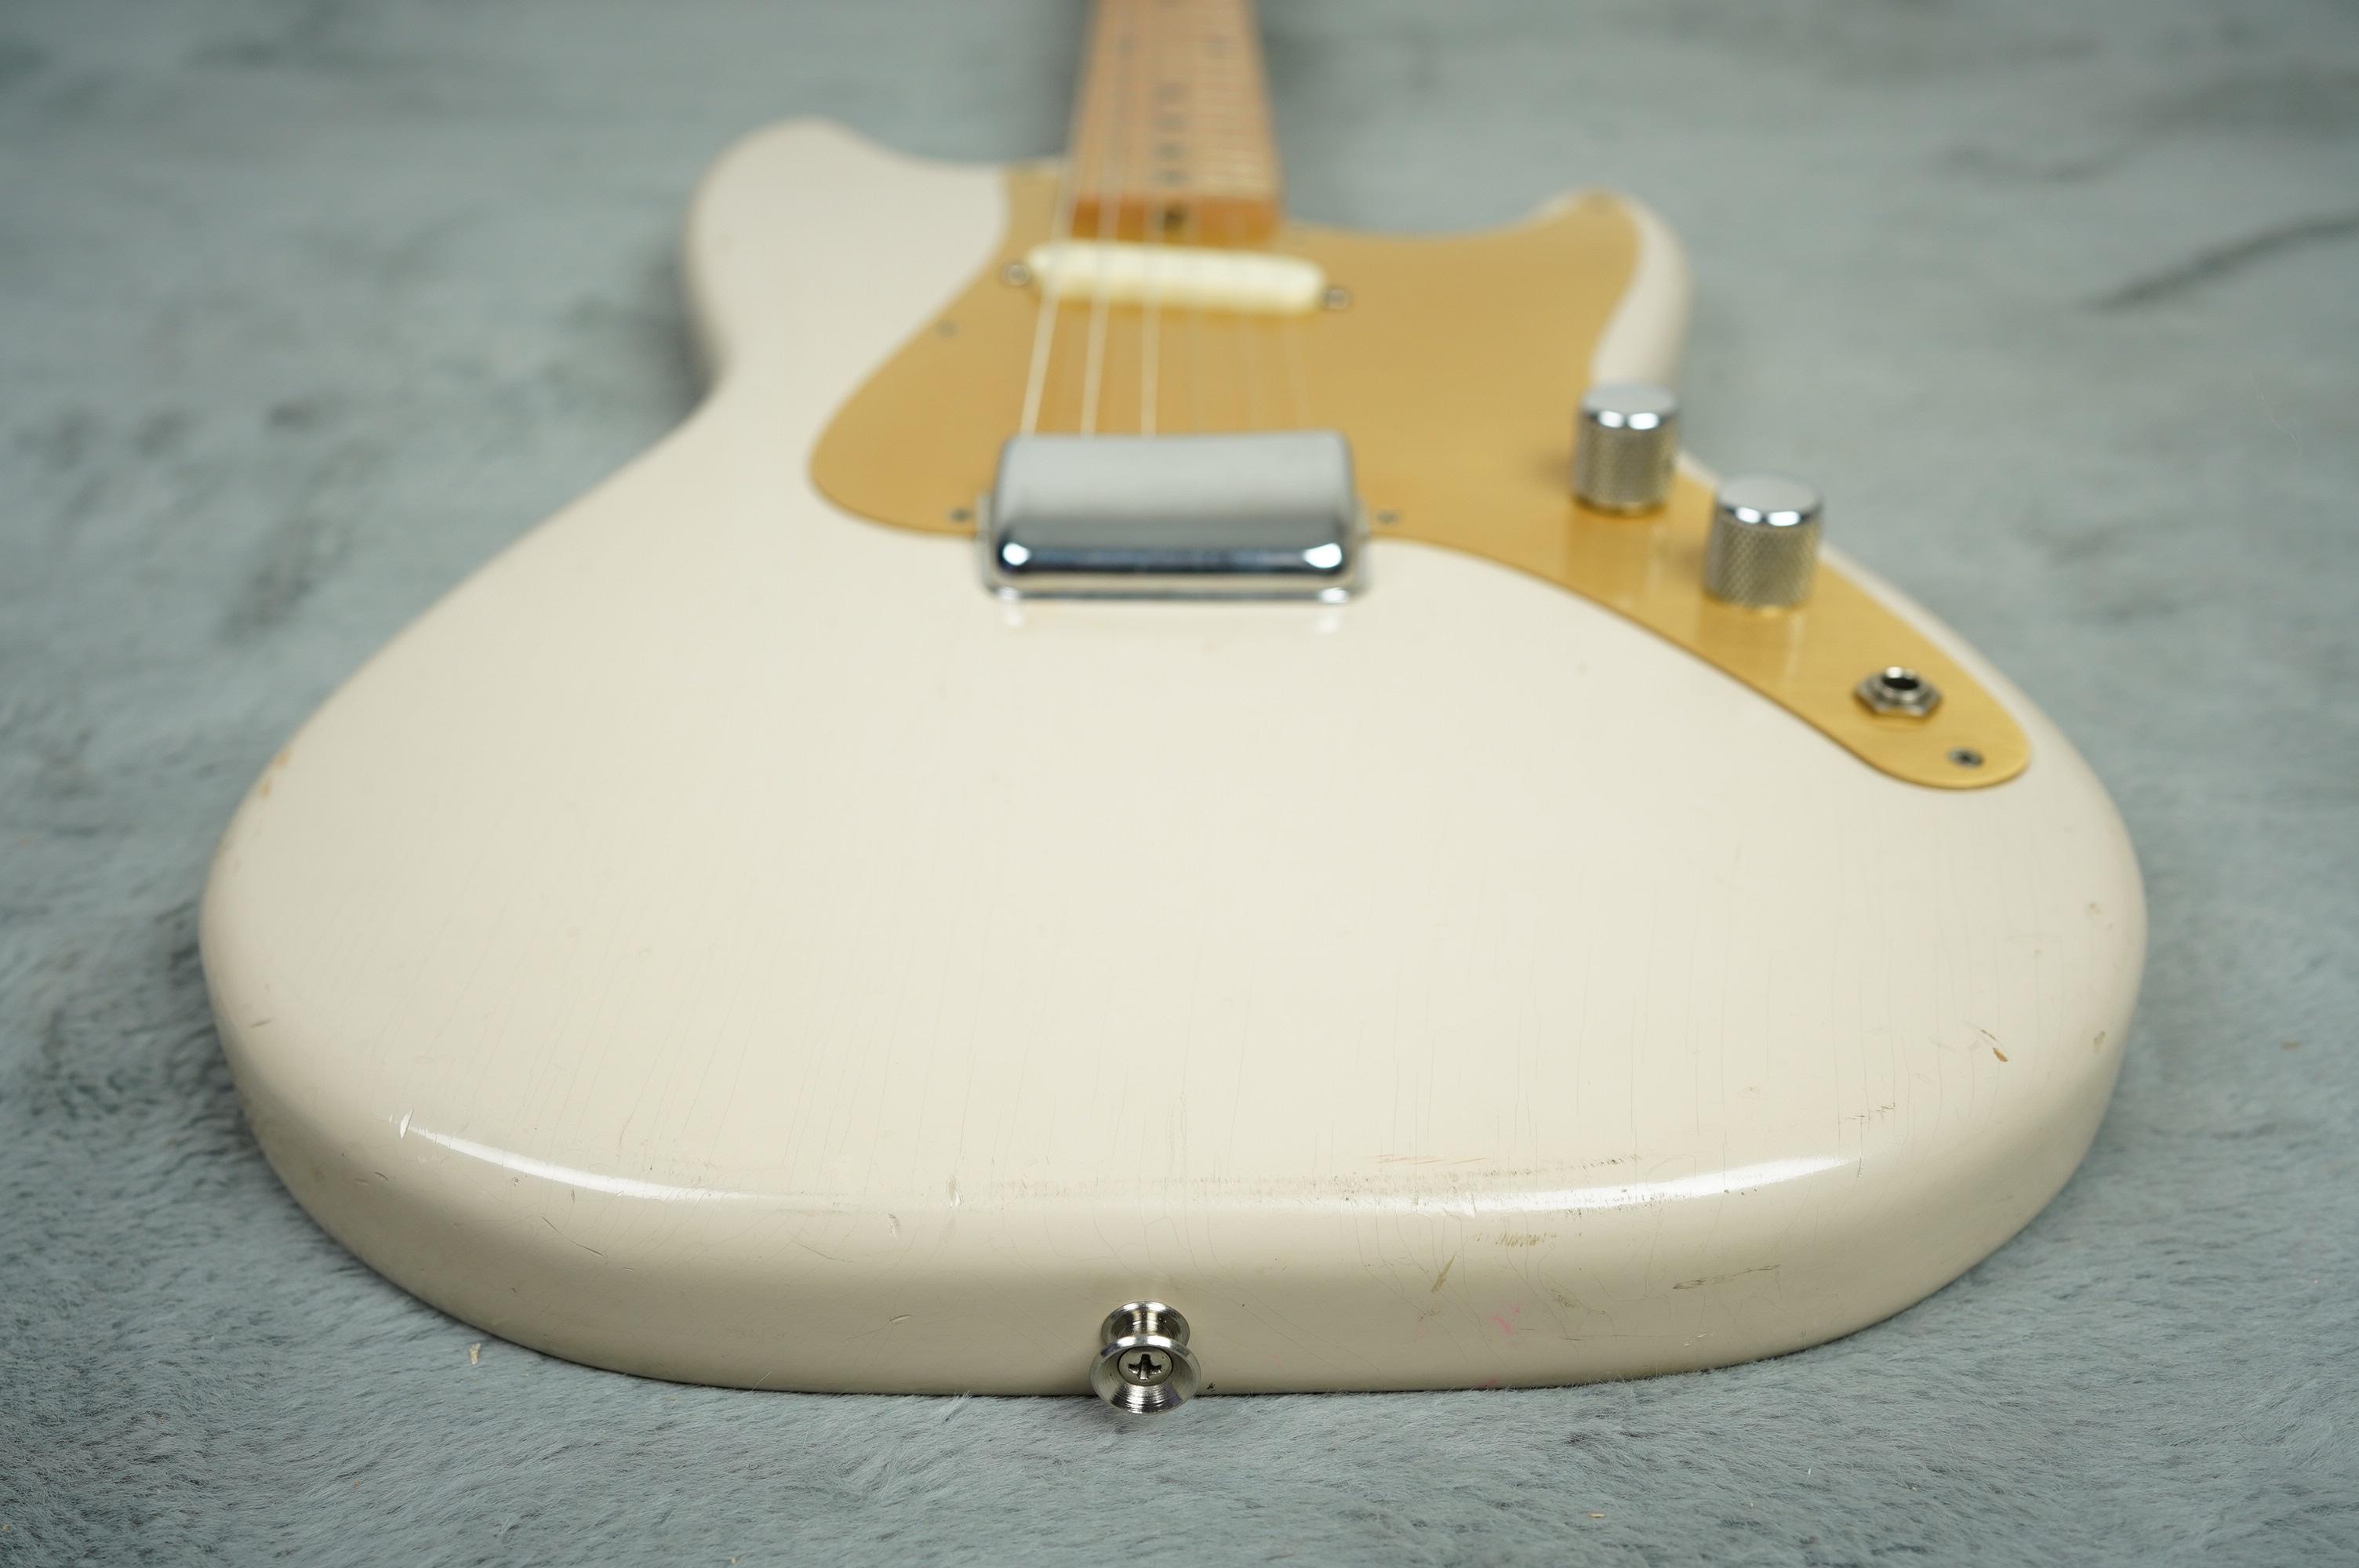 1959 Fender Musicmaster